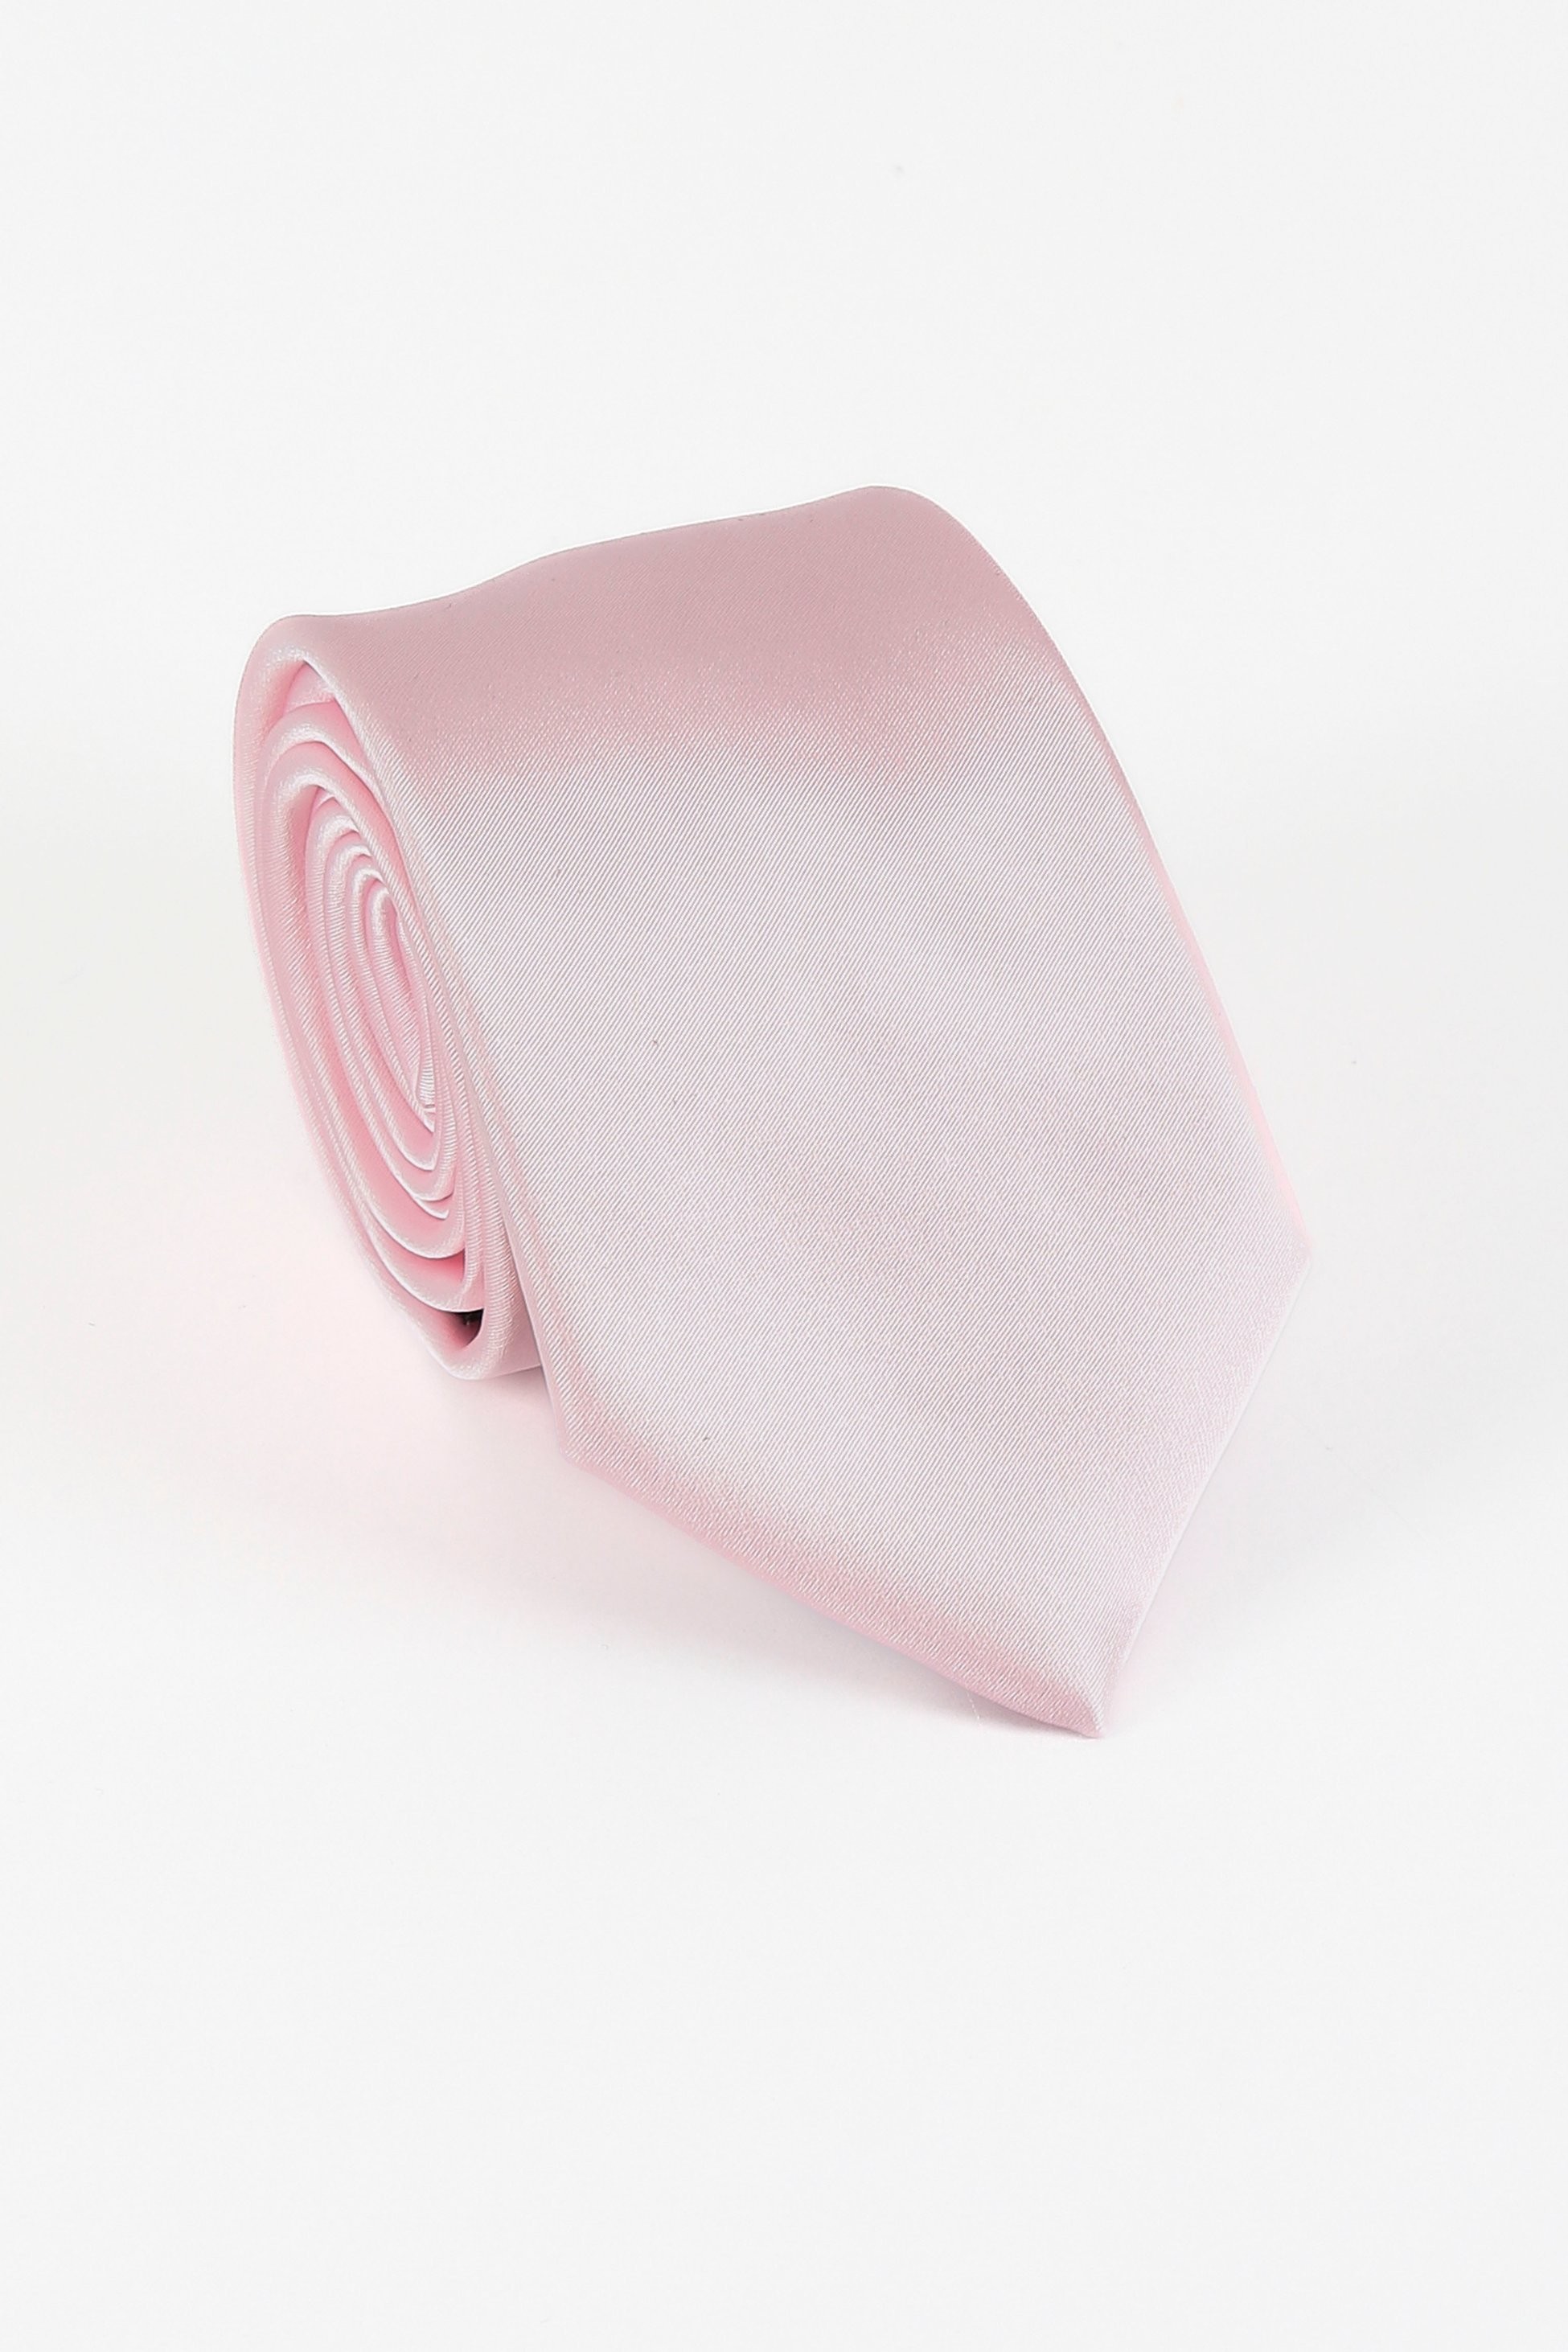 Männer Solide Satin Krawatte Manschettenknopf 4 Teilige Hochzeitsgeschenkset Set - Hell-Pink